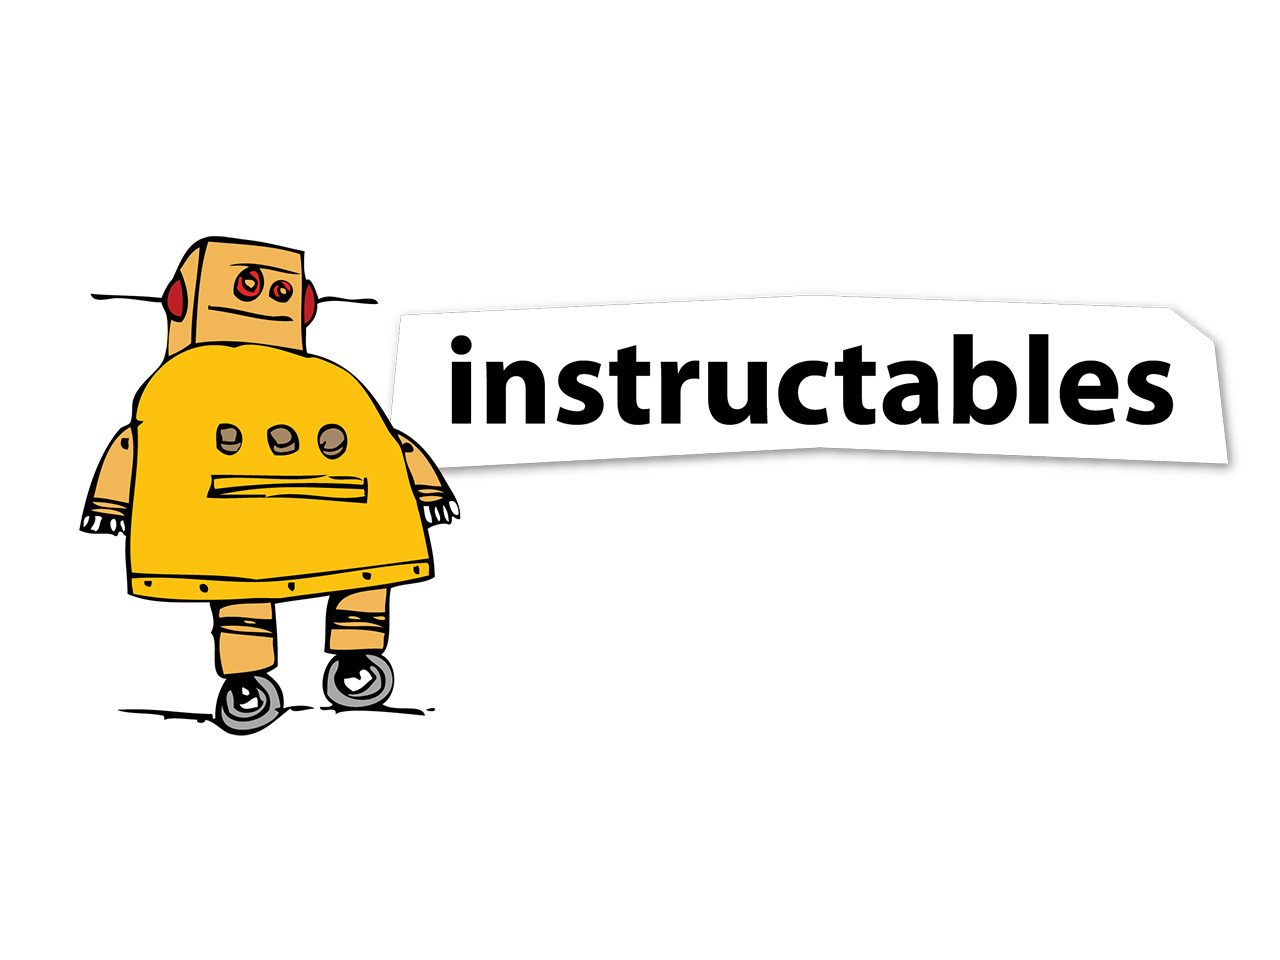 Featured image for “Instructables: la tua fonte di ispirazione e istruzioni per progetti fai-da-te”